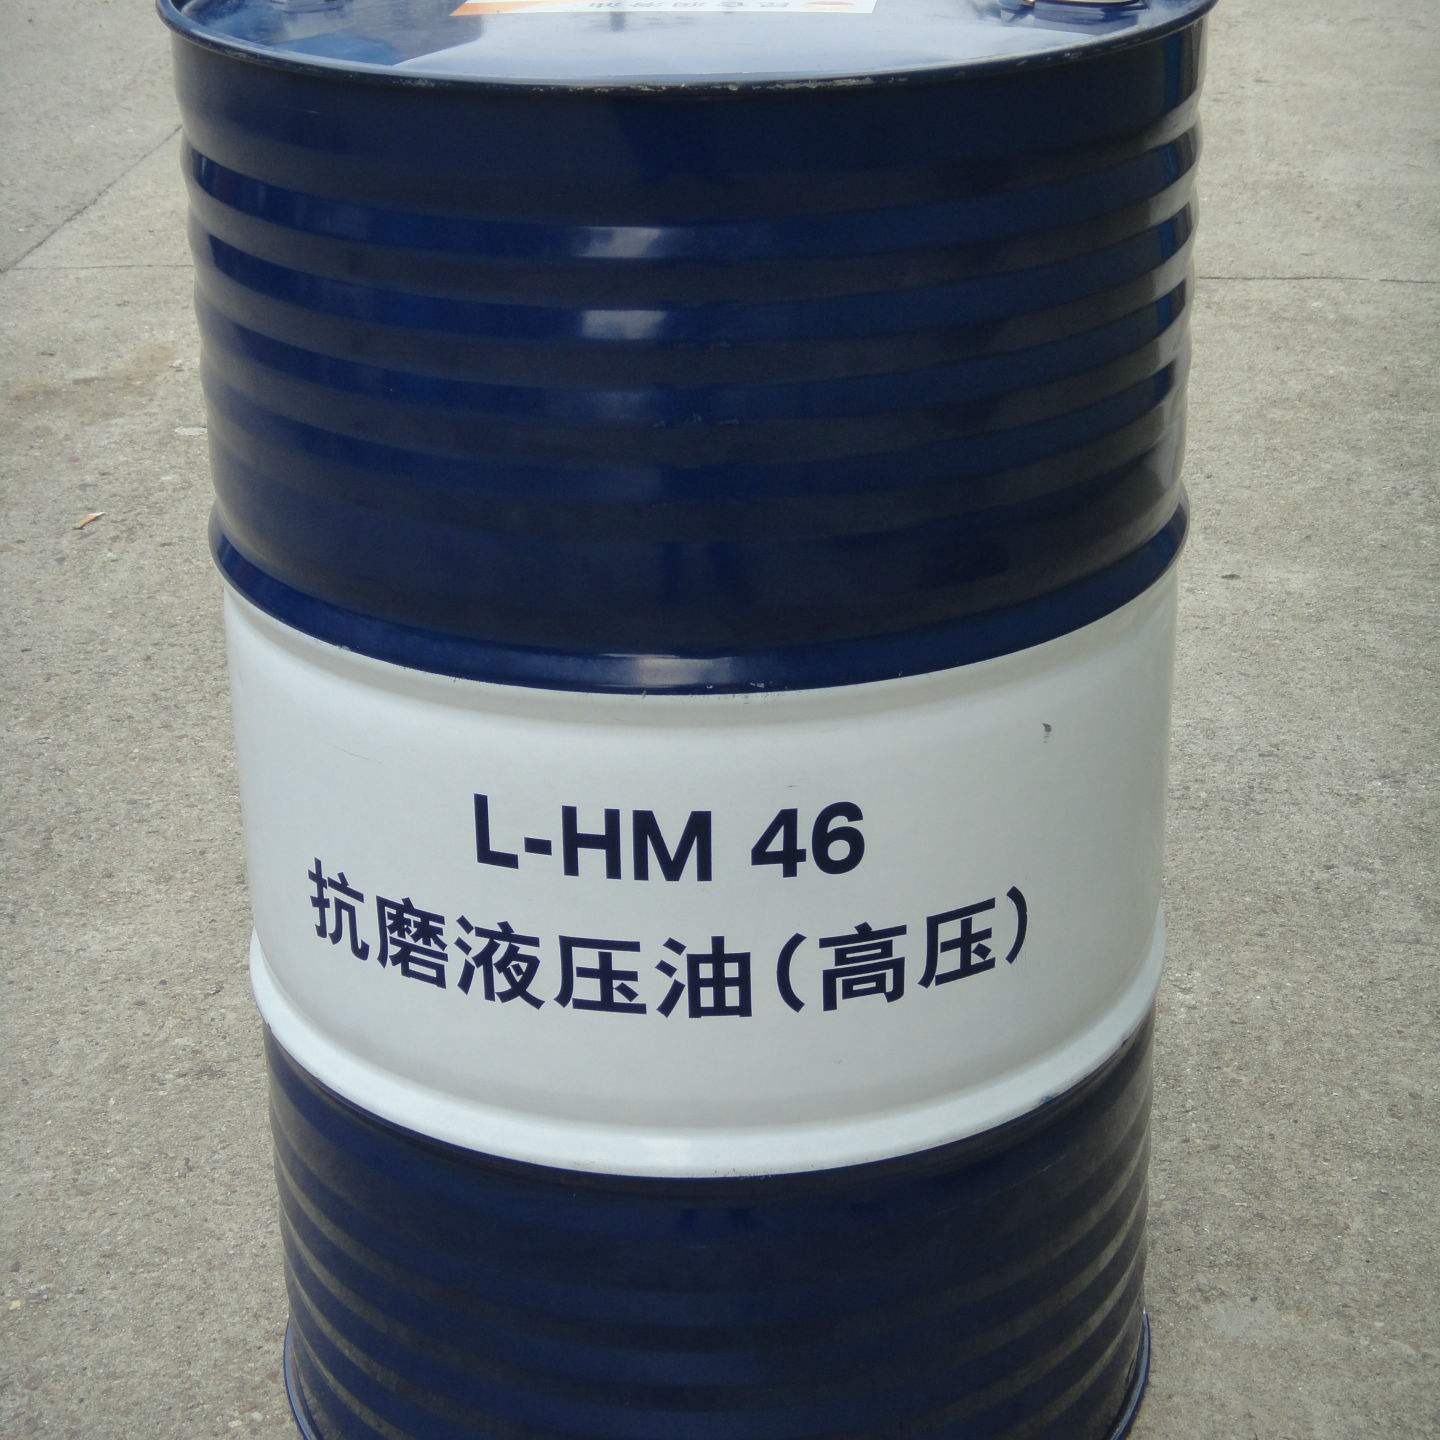 昆仑润滑油一级代理商 现货昆仑抗磨液压油HM46/HM32/HM68 170kg 昆仑润滑油总代理 原厂正品 质量保障